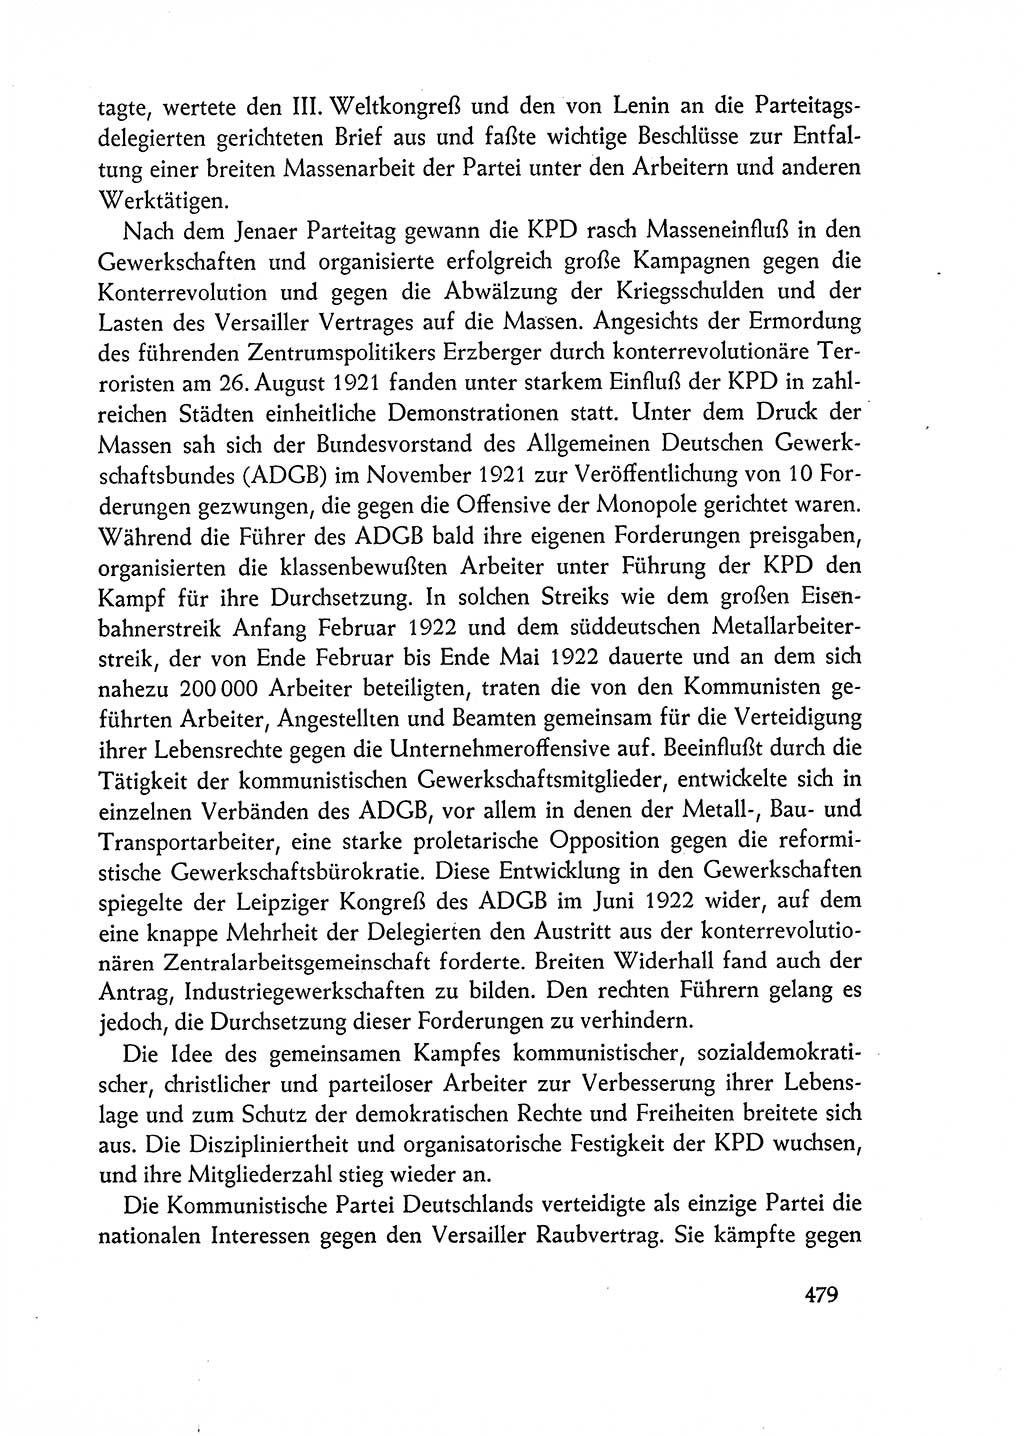 Dokumente der Sozialistischen Einheitspartei Deutschlands (SED) [Deutsche Demokratische Republik (DDR)] 1962-1963, Seite 479 (Dok. SED DDR 1962-1963, S. 479)